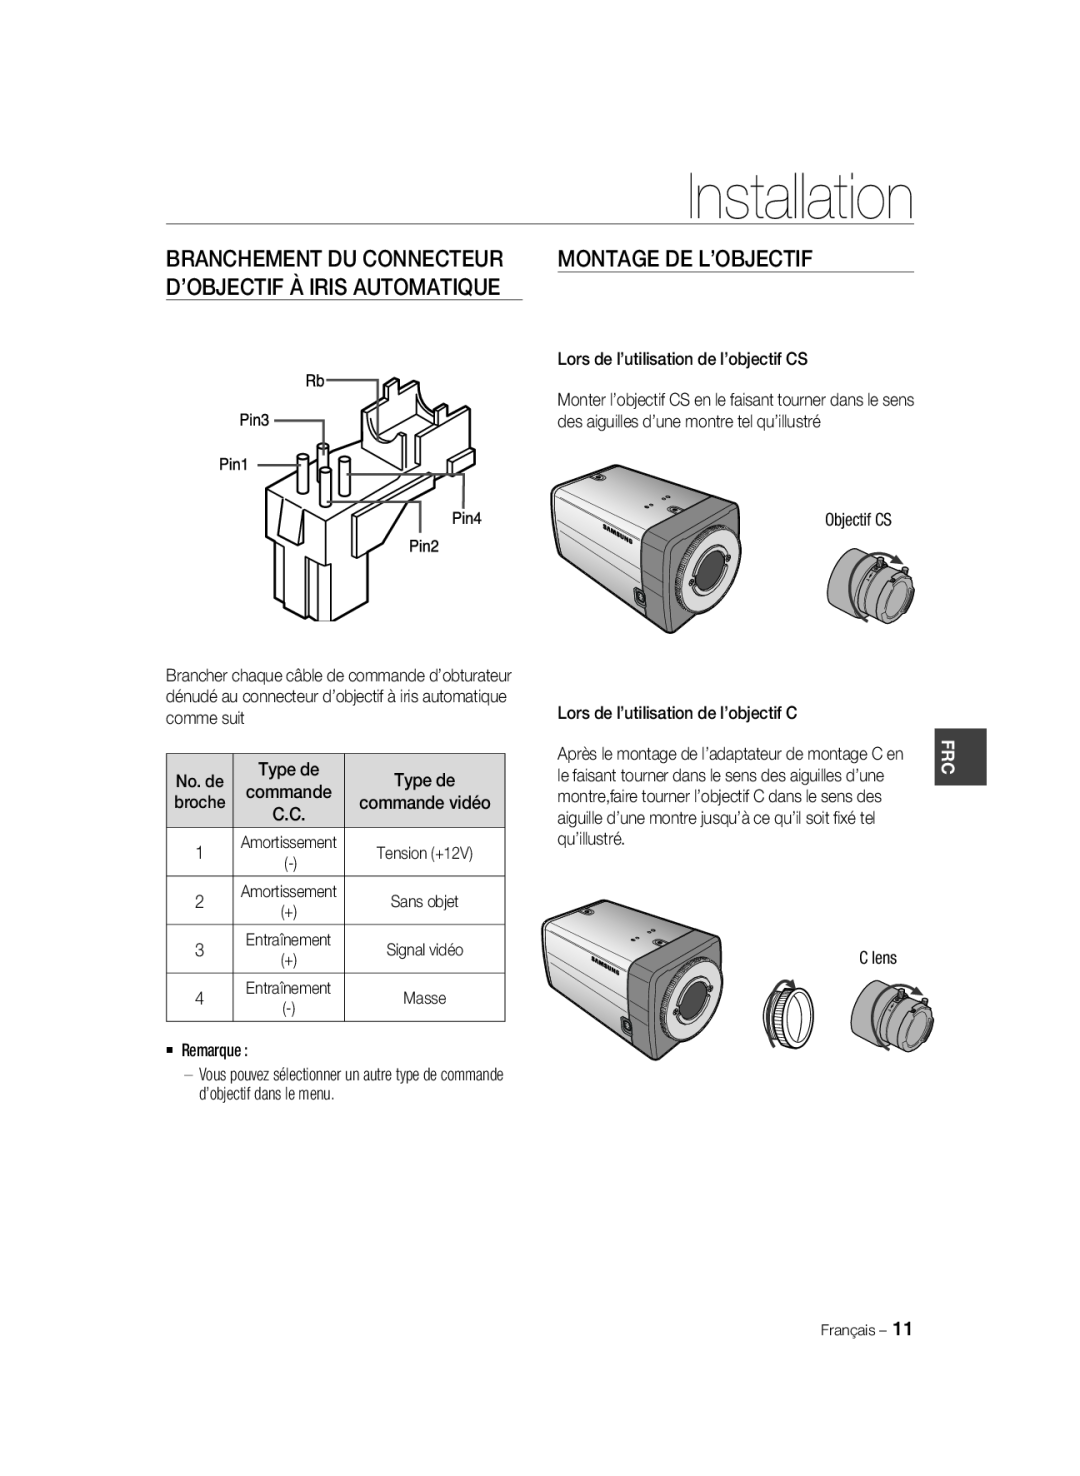 Samsung SCC-A2033P manual Montage De L’Objectif, Branchement Du Connecteur, D’Objectif À Iris Automatique, Installation 